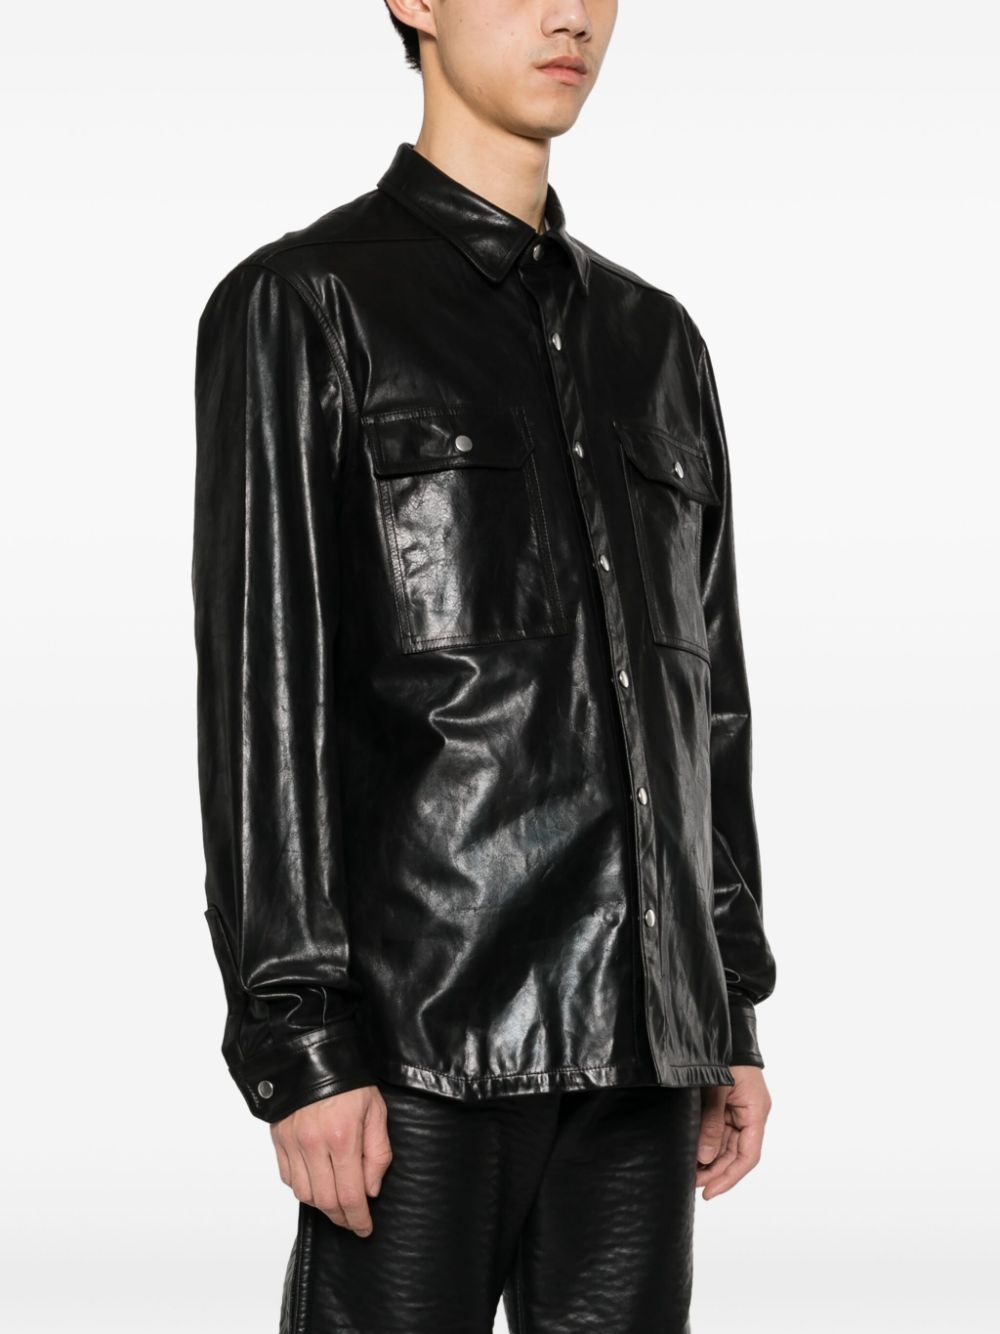 Outershirt leather jacket - 3